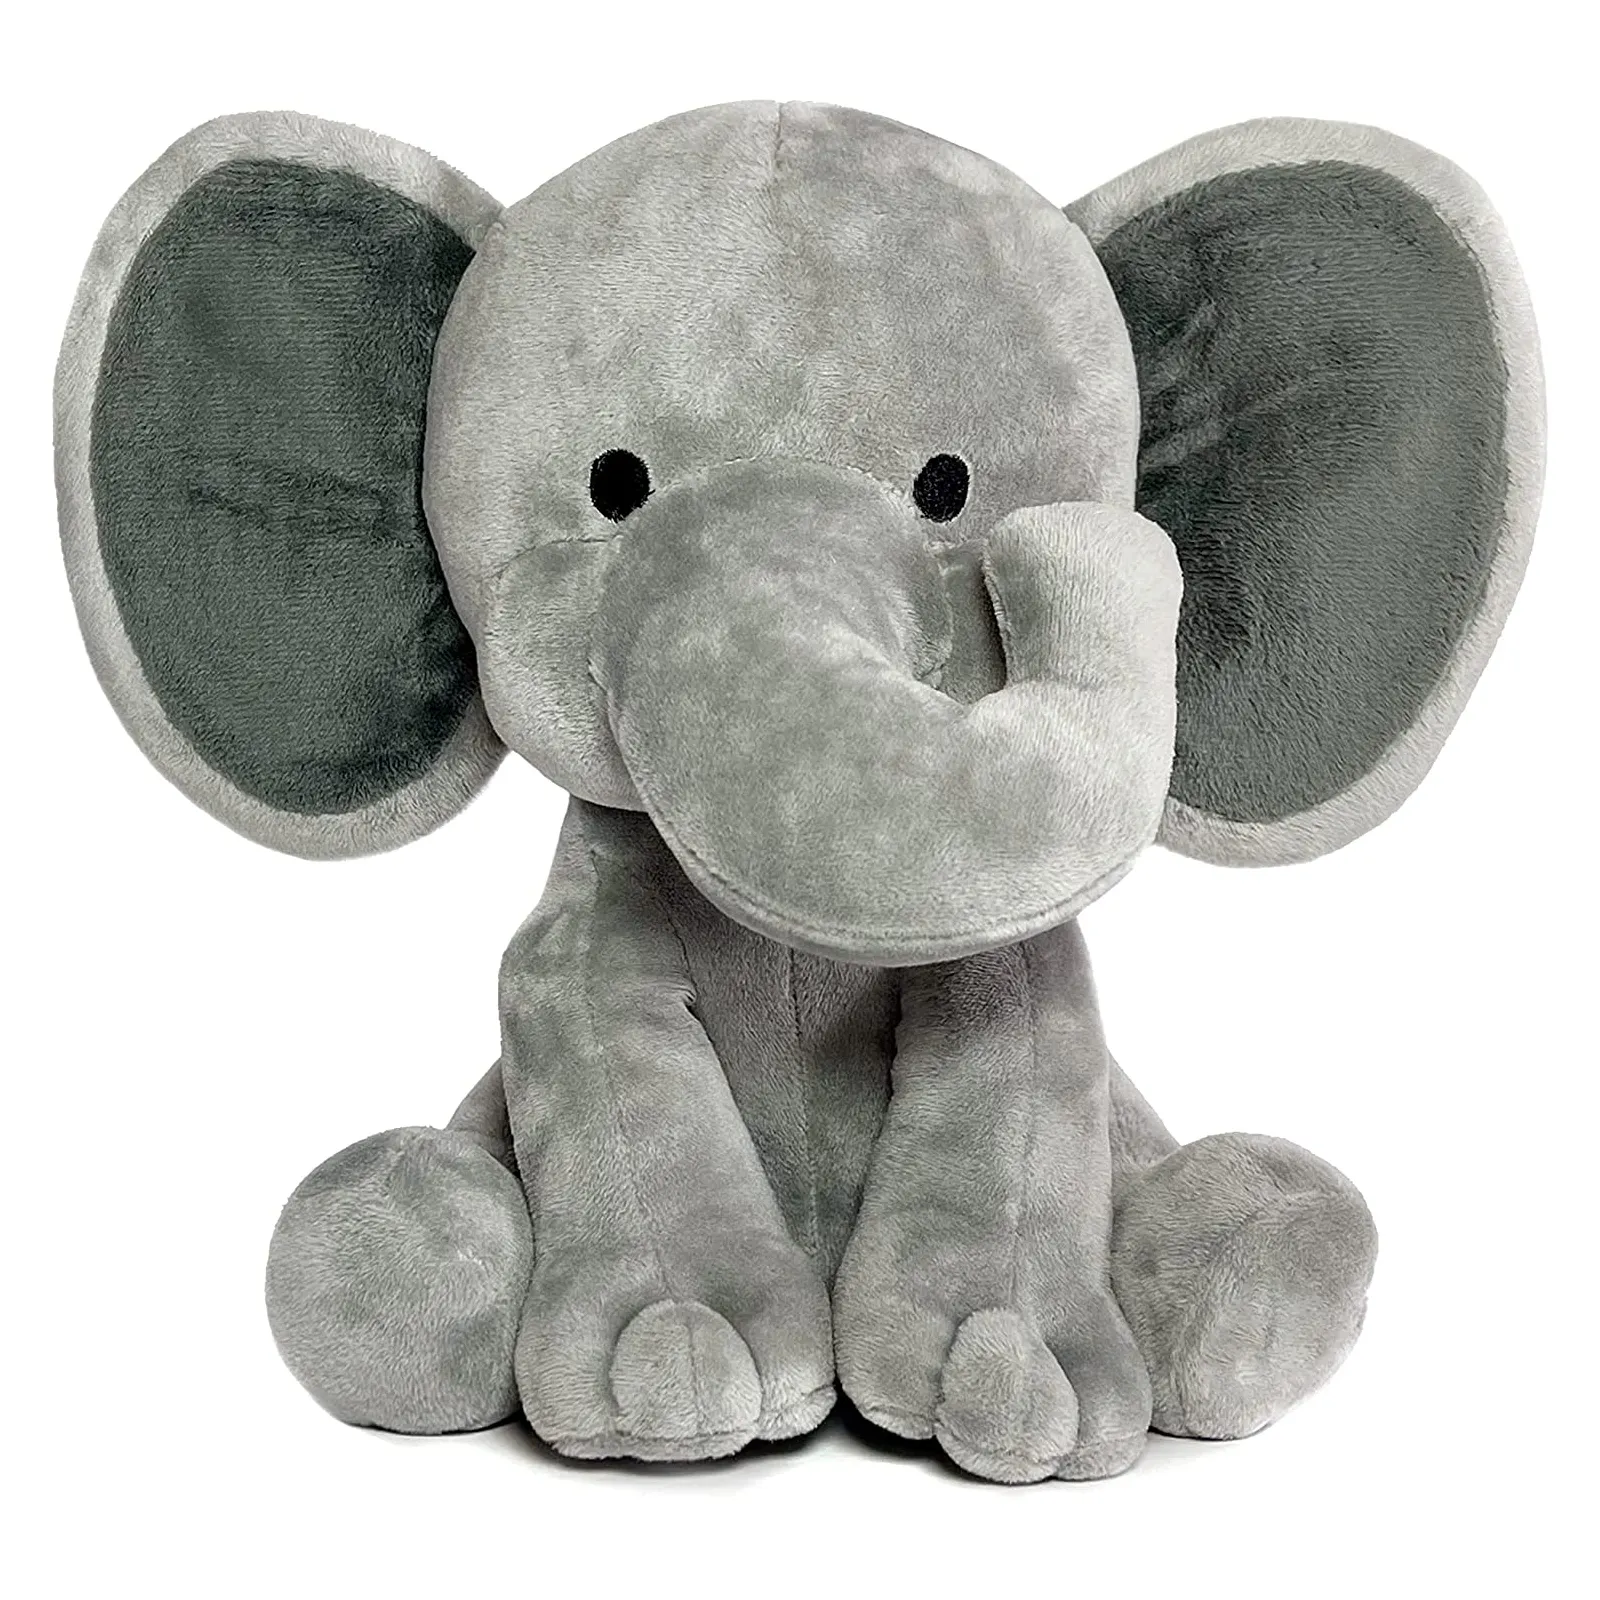 Wholesale creative grey elephant plush toy oem comforter lovey comforter toys baby rattles elephant stuffed&plush toy animal